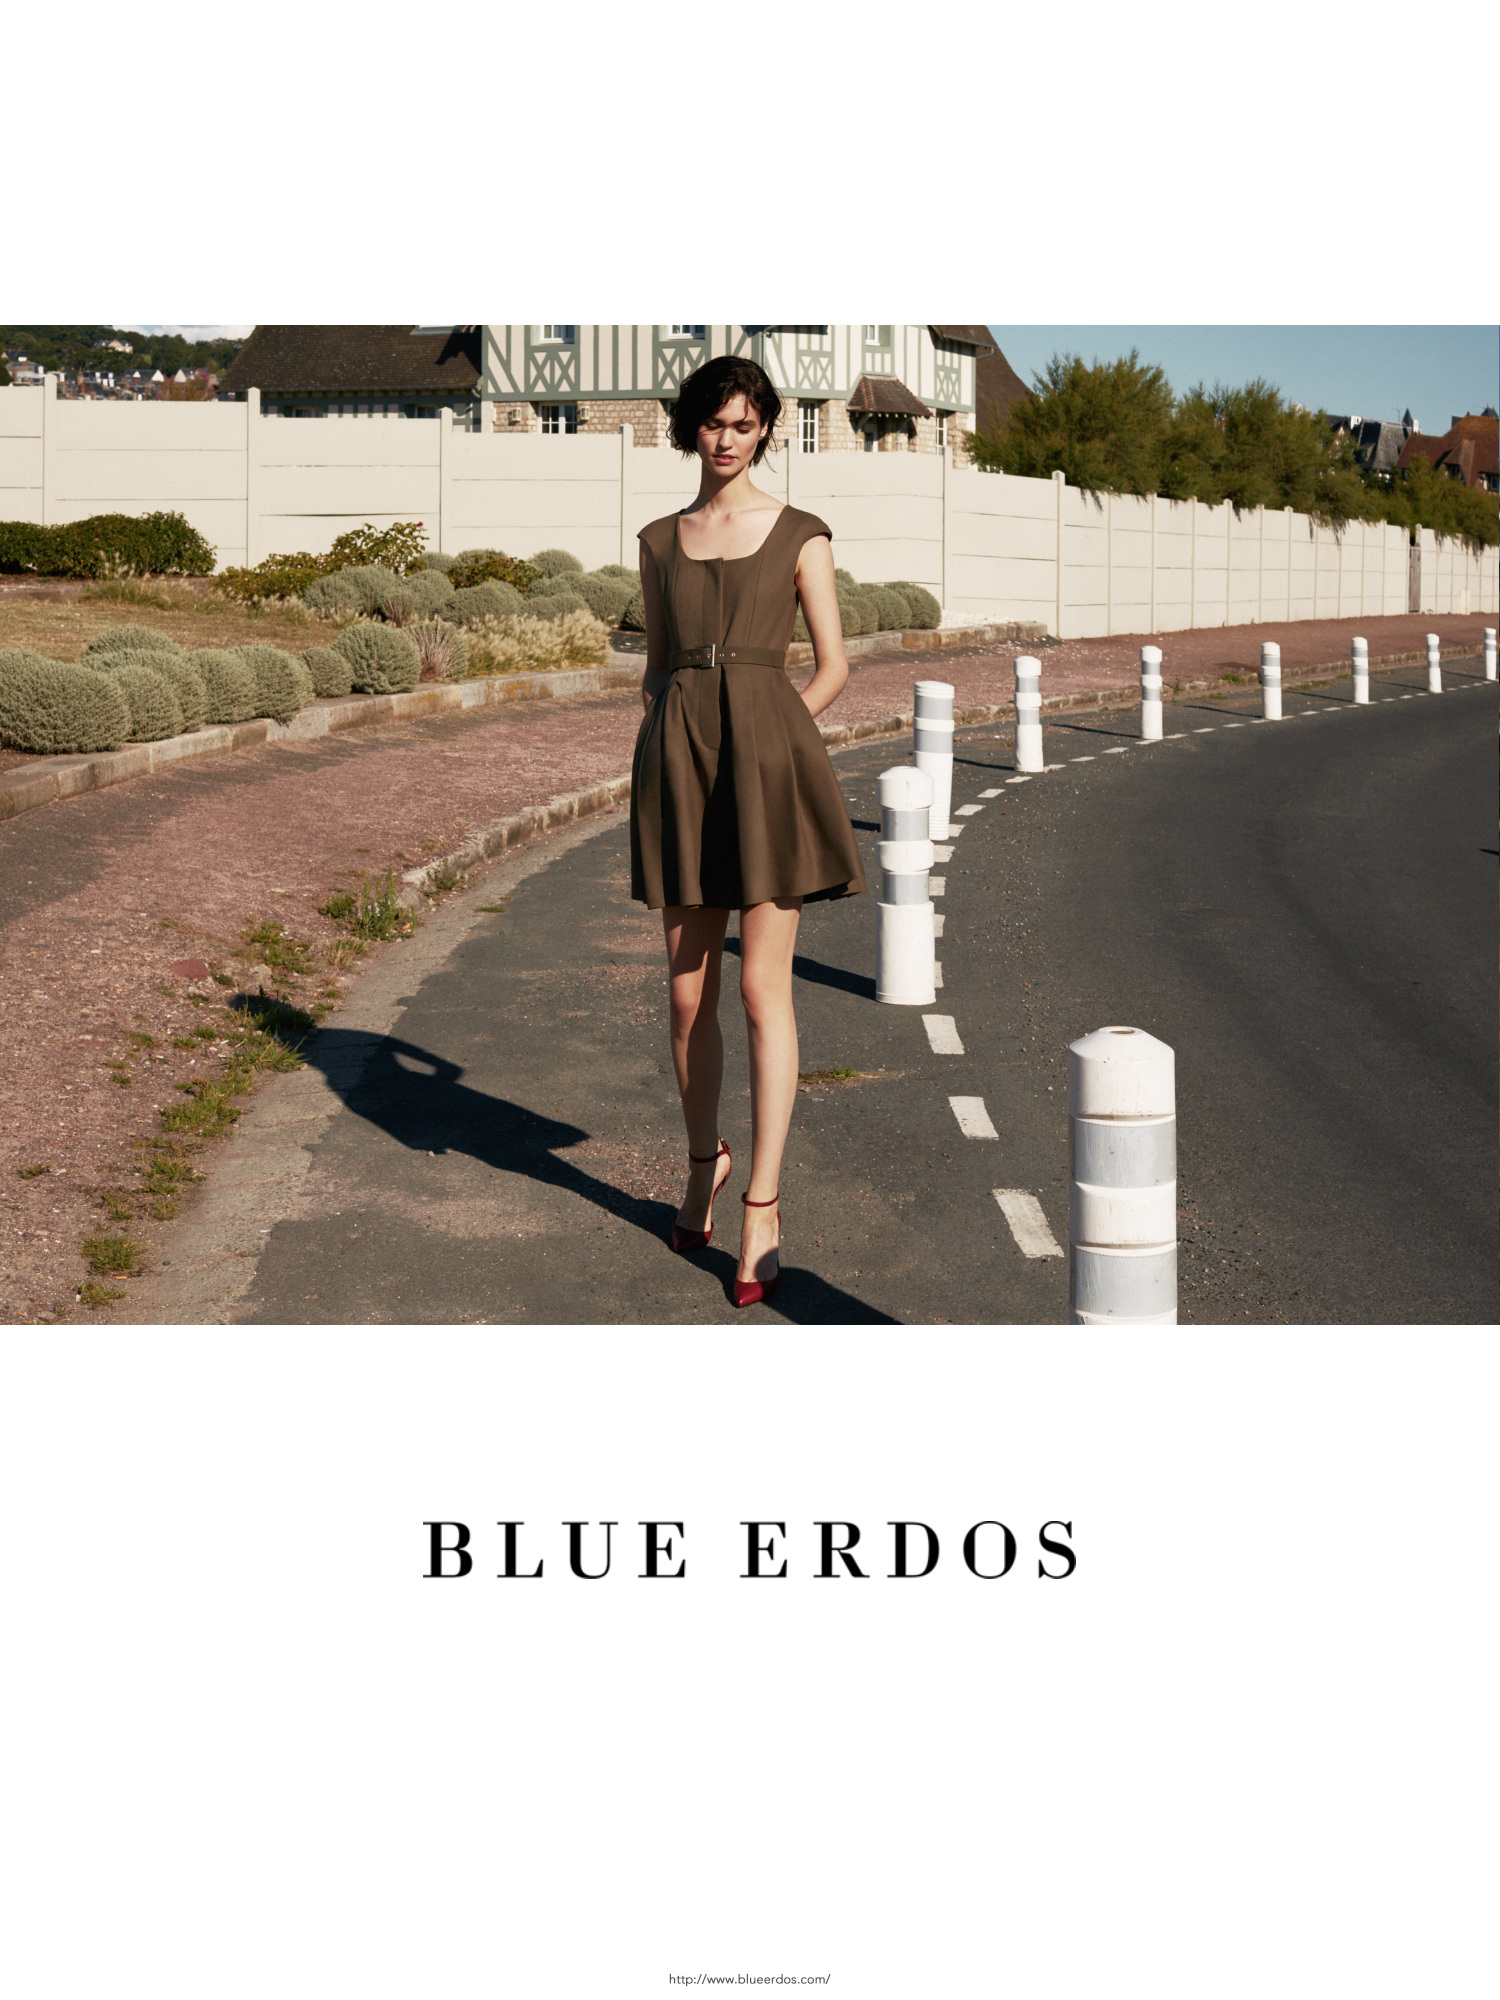 Blue Erdos 2016 Spring & Summer Campaign